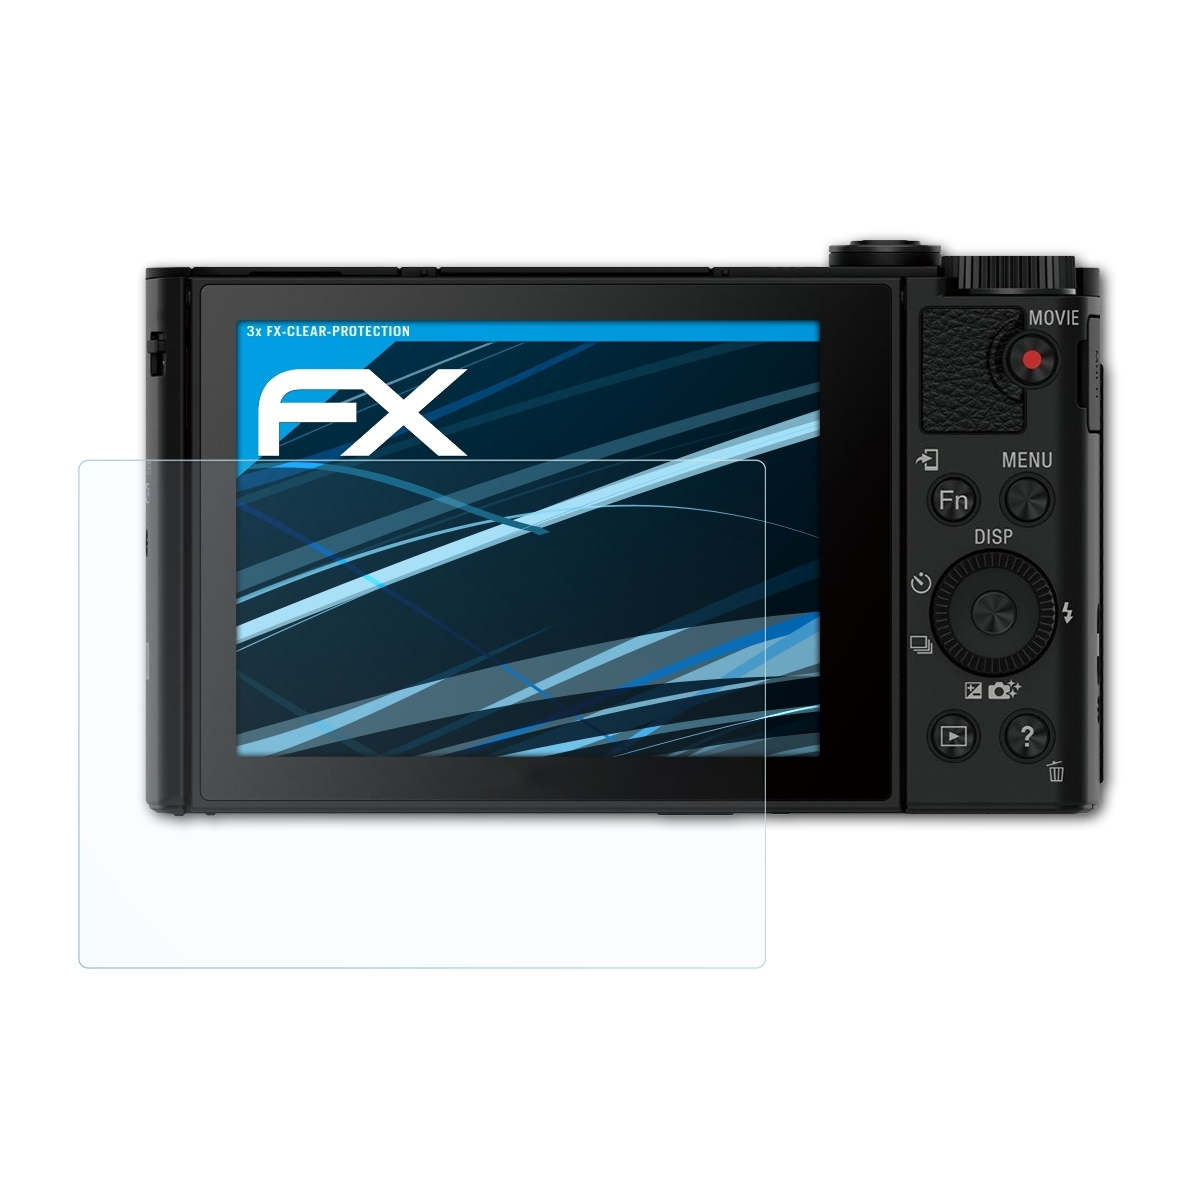 ATFOLIX DSC-HX90) 3x FX-Clear Displayschutz(für Sony